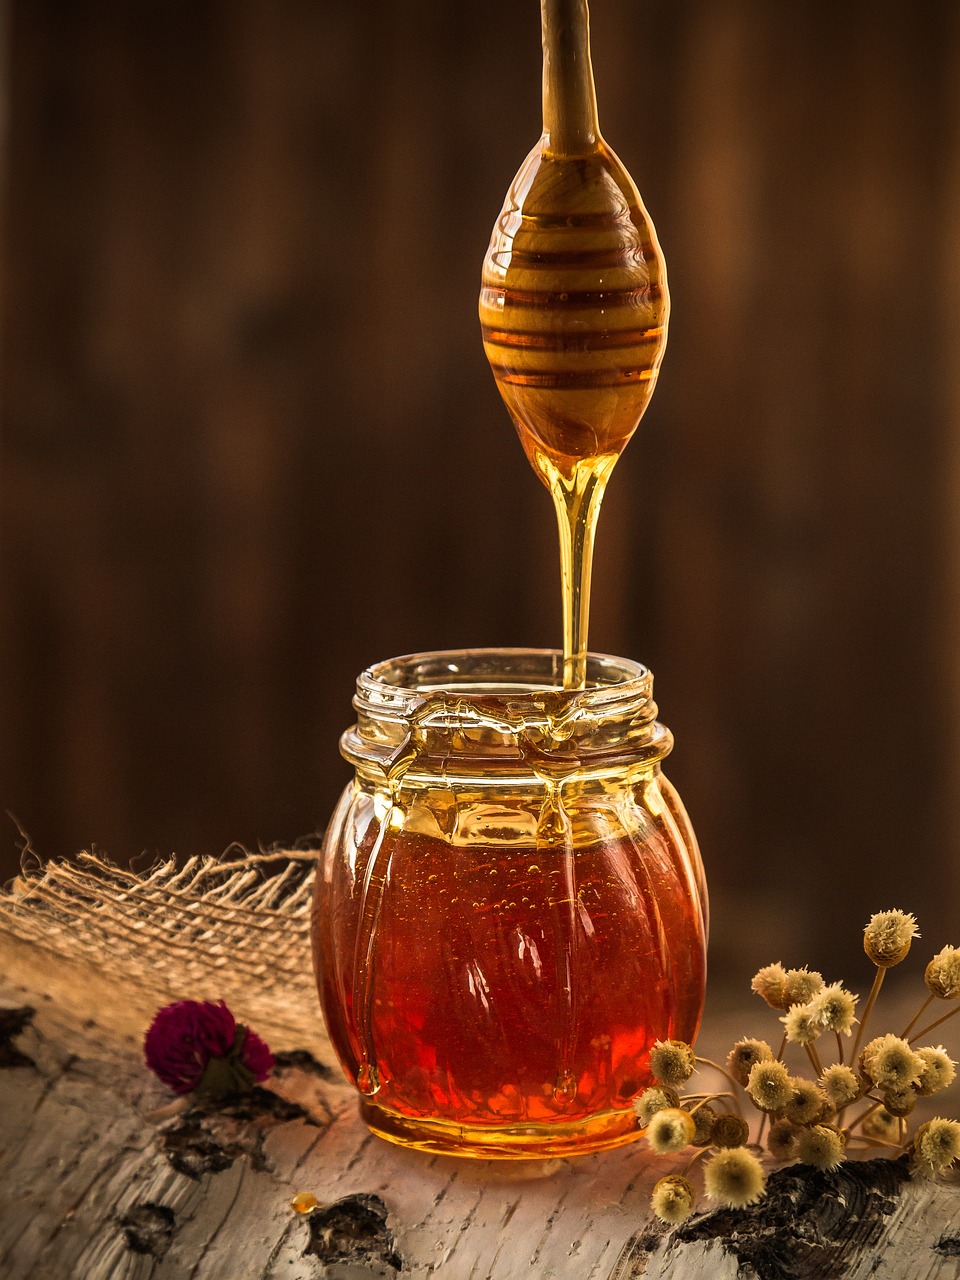 꿀의 놀라운 효능 - 건강과 일상에 미치는 긍정적인 영향